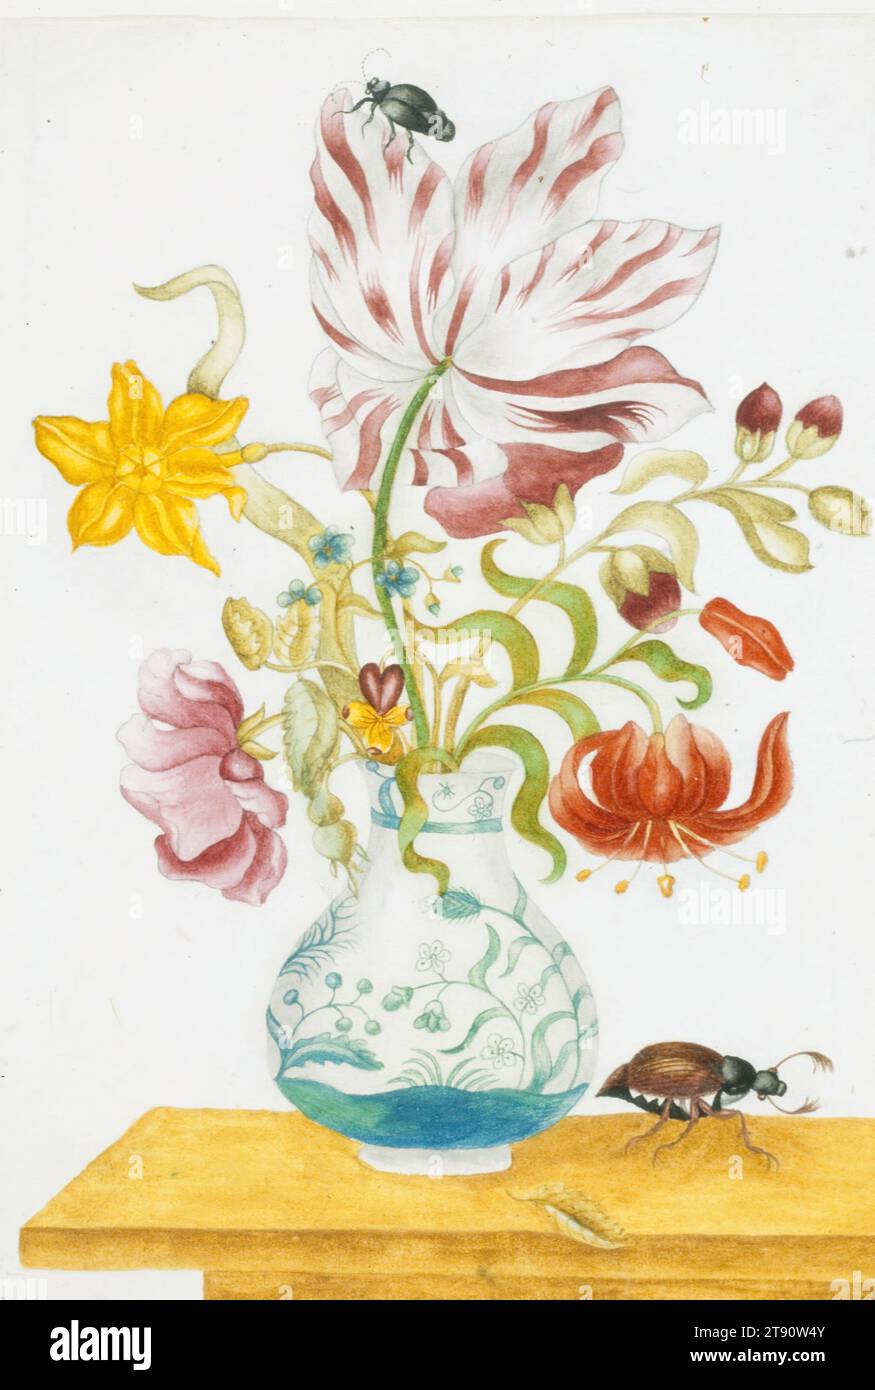 Tulipe, lys, rose, etc. En vase, avec insectes, 17e siècle, École de Maria Sibylla Merian, allemand, 1647-1717, 12 3/4 x 8 3/4 po. (32,39 x 22,23 cm) (image)13 1/16 x 9 1/8 pouces (33,18 x 23,18 cm) (feuille), Aquarelle sur papier, pays-Bas (?), 17e siècle, Art et science se mélangent harmonieusement dans l'œuvre de Maria Sibylla Merian. L'une des entomologistes et botanistes les plus importants de son temps, elle voyage en Amérique du Sud en 1699 pour étudier, collecter et peindre des spécimens exotiques. Les représentations de Merian de papillons tropicaux, mites, chenilles et autres insectes ainsi que leurs fruits indigènes Banque D'Images